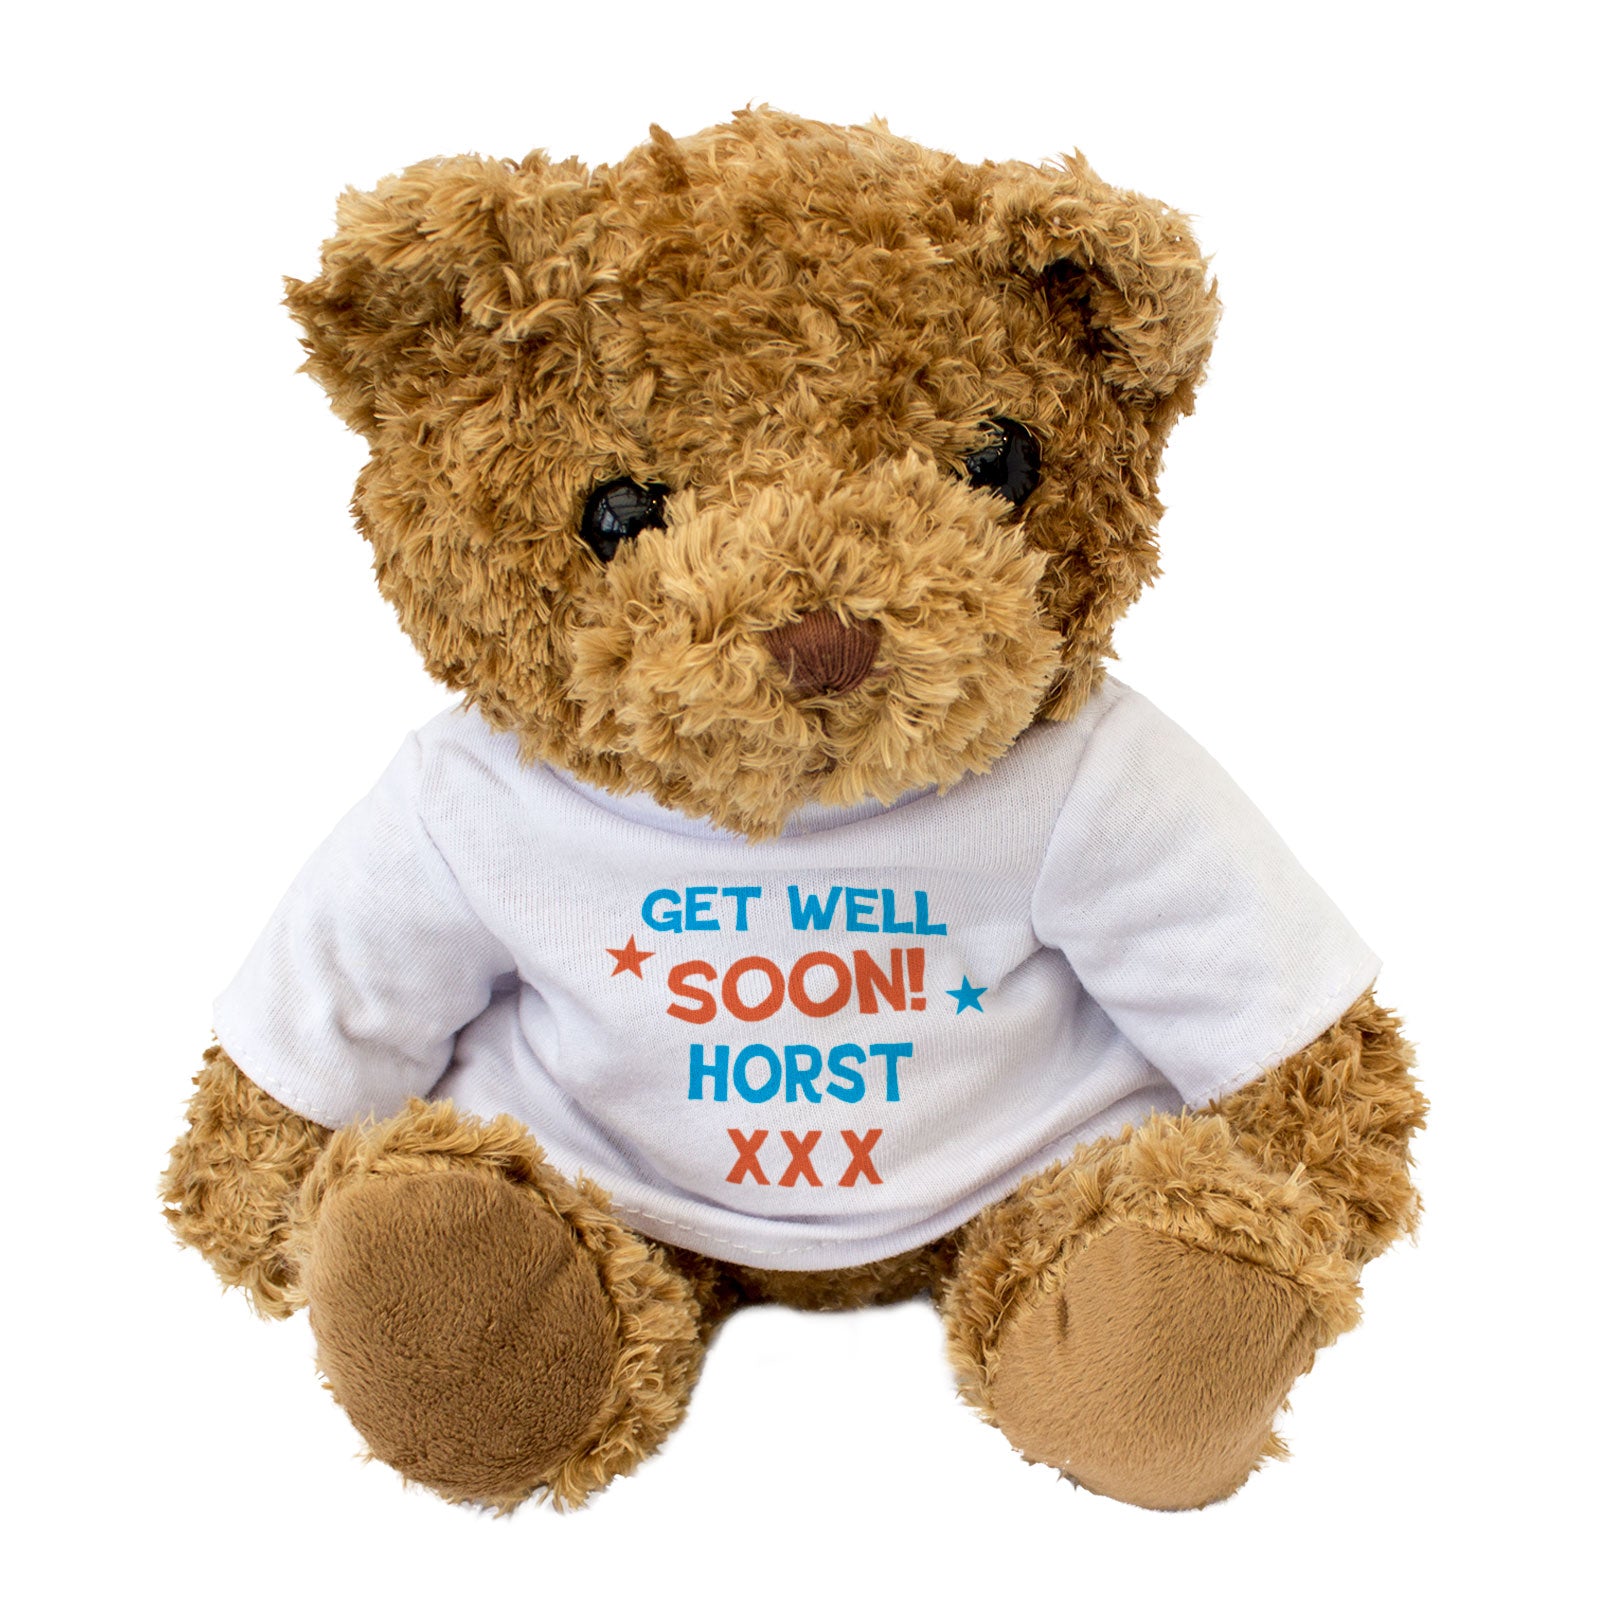 Get Well Soon Horst - Teddy Bear